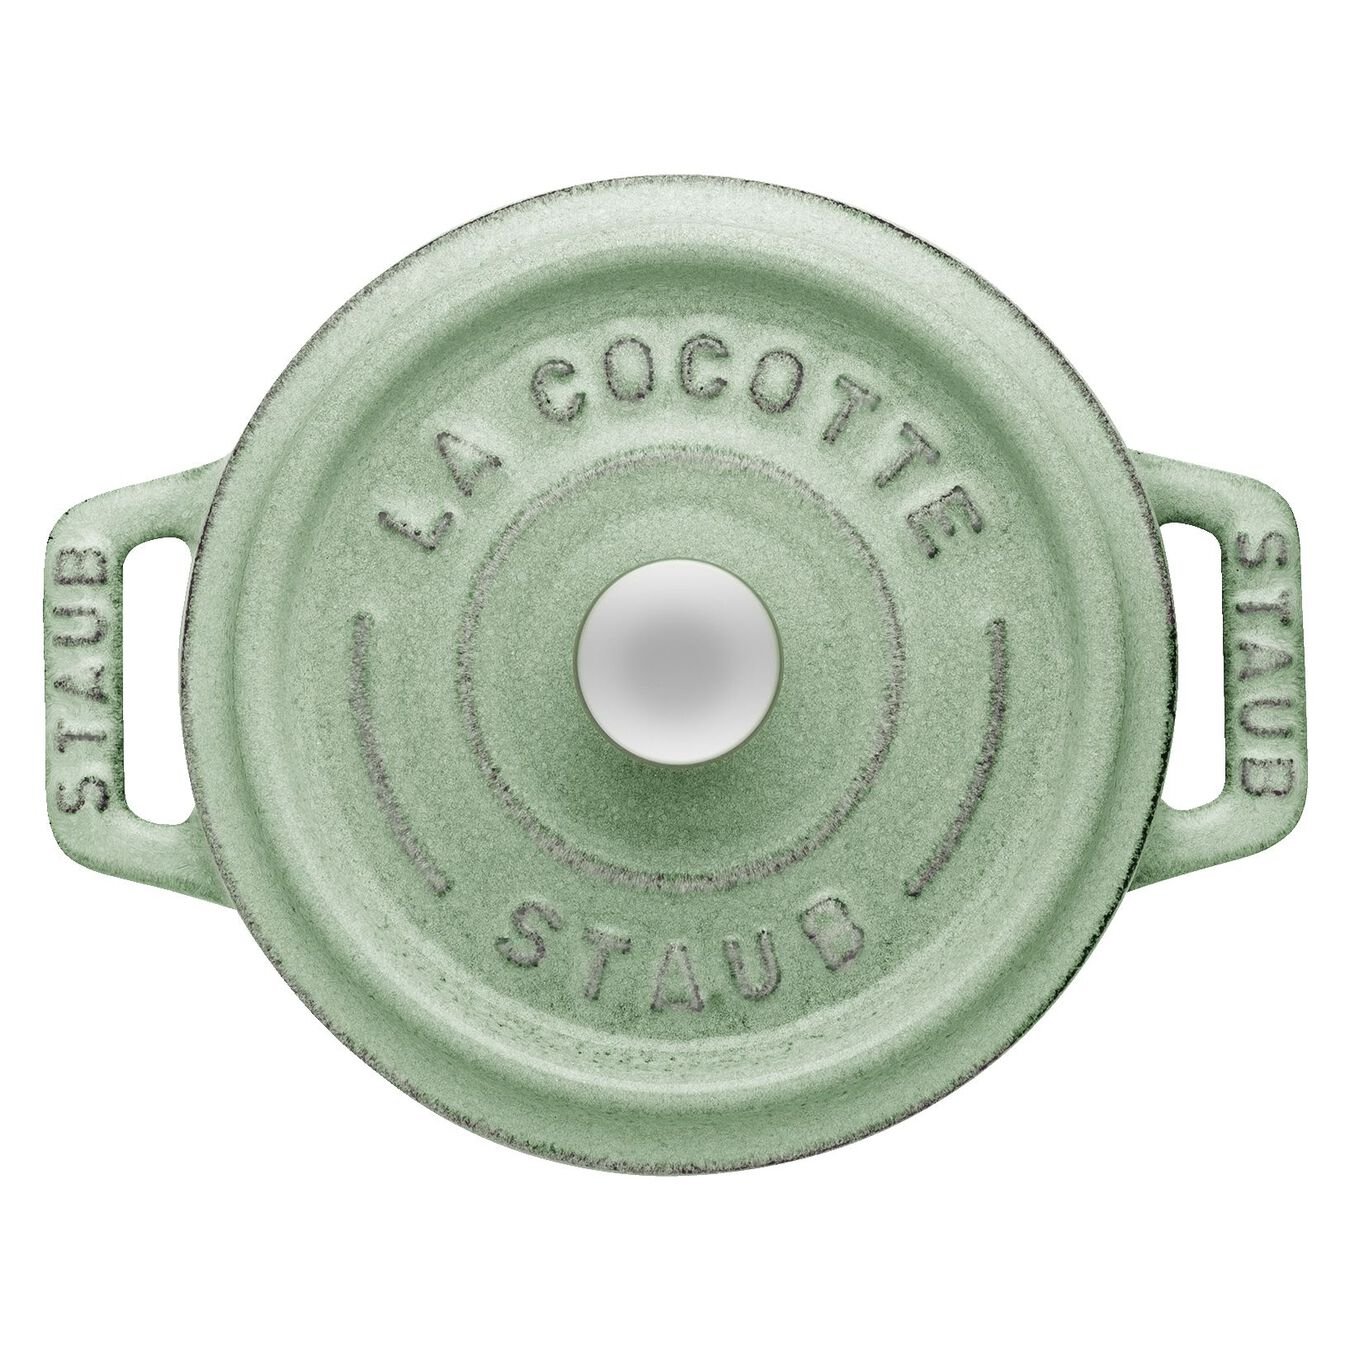 Mini cocotte 10 cm, redondo, Verde seco, Ferro fundido,,large 4